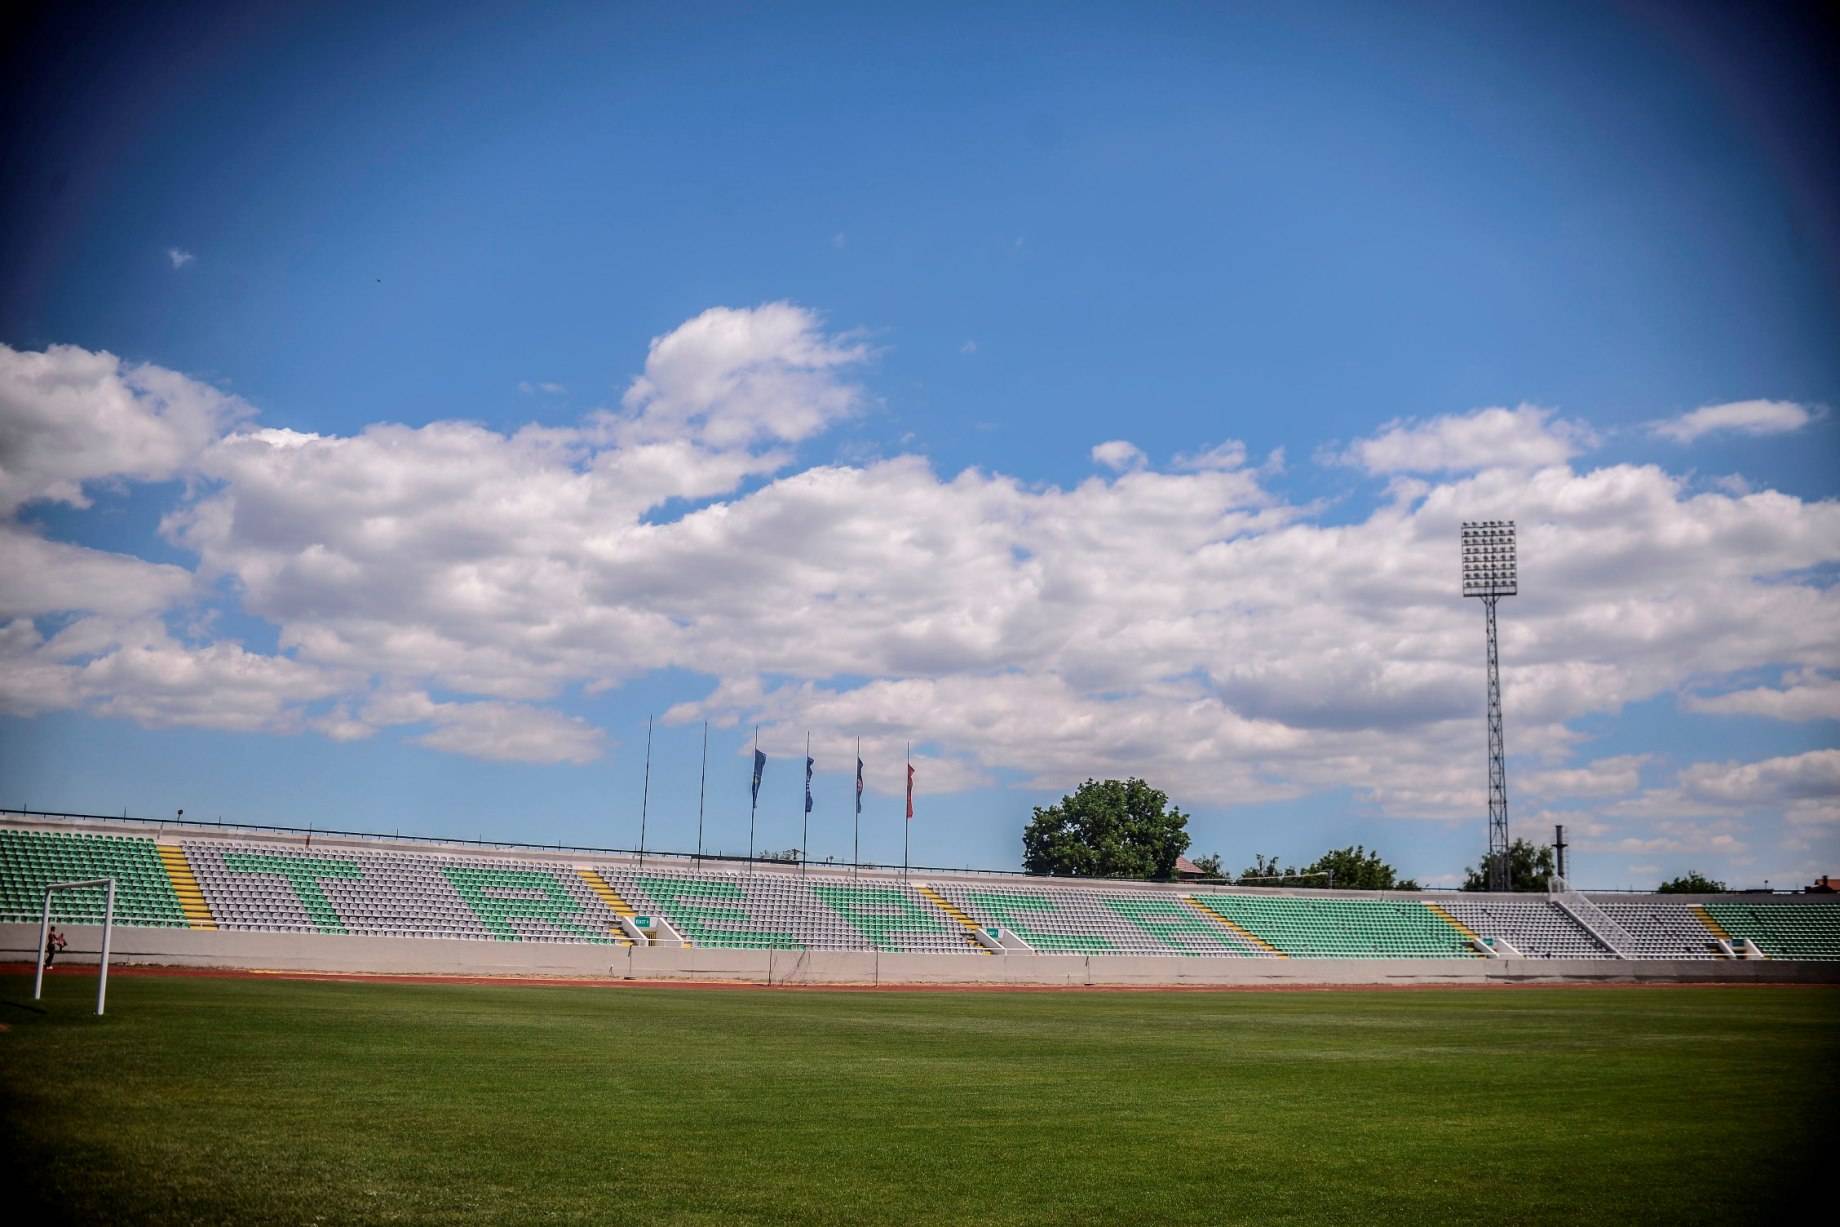 Stadiumi i Mitrovicës i ndërtuar sipas standardeve të UEFA-s dhe FIFA-s